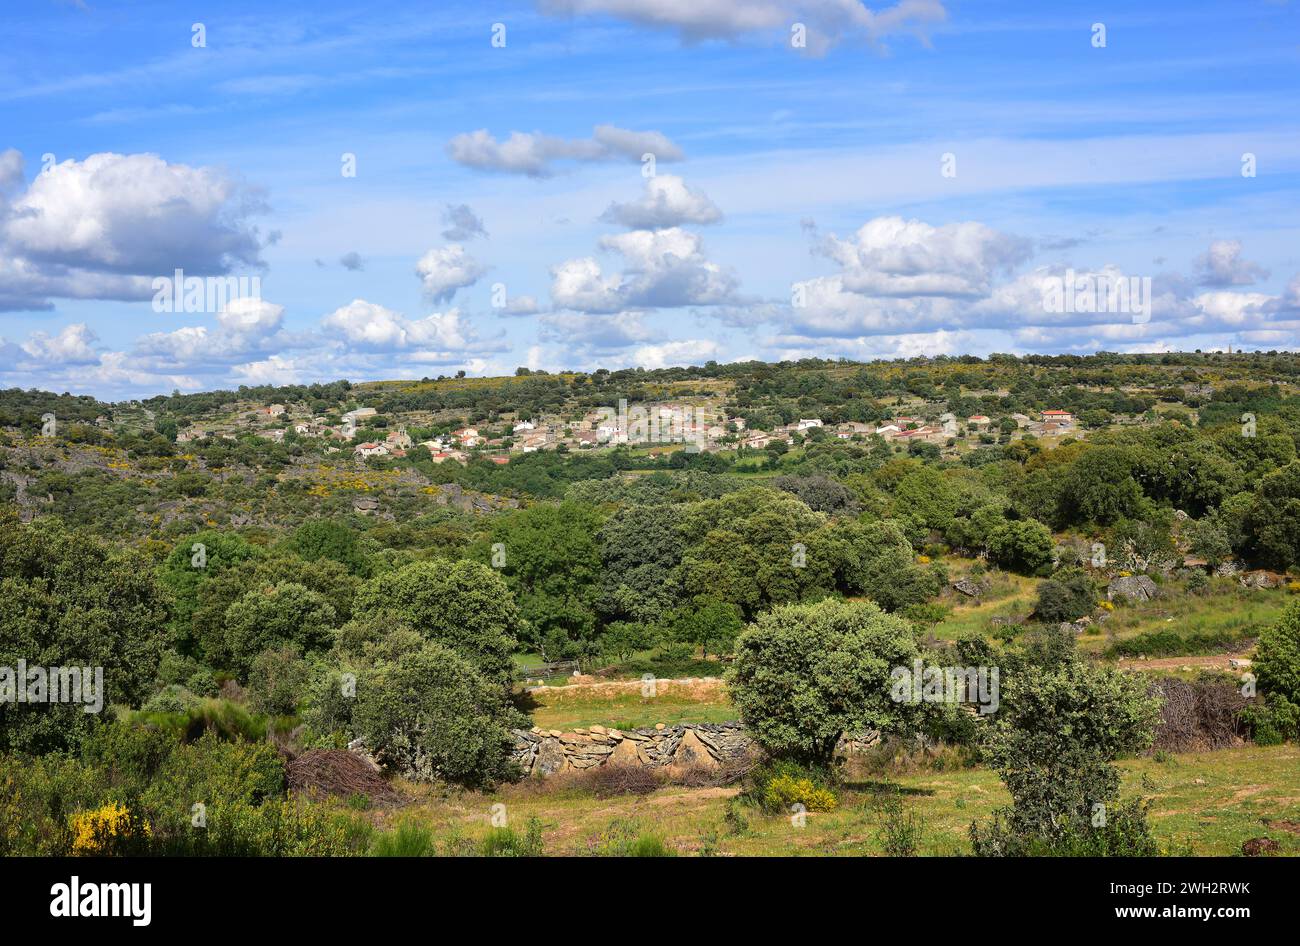 Fornillos de Fermoselle, Villar del Buey municipality. Panoramic view. Zamora province, Castilla y Leon, Spain. Stock Photo